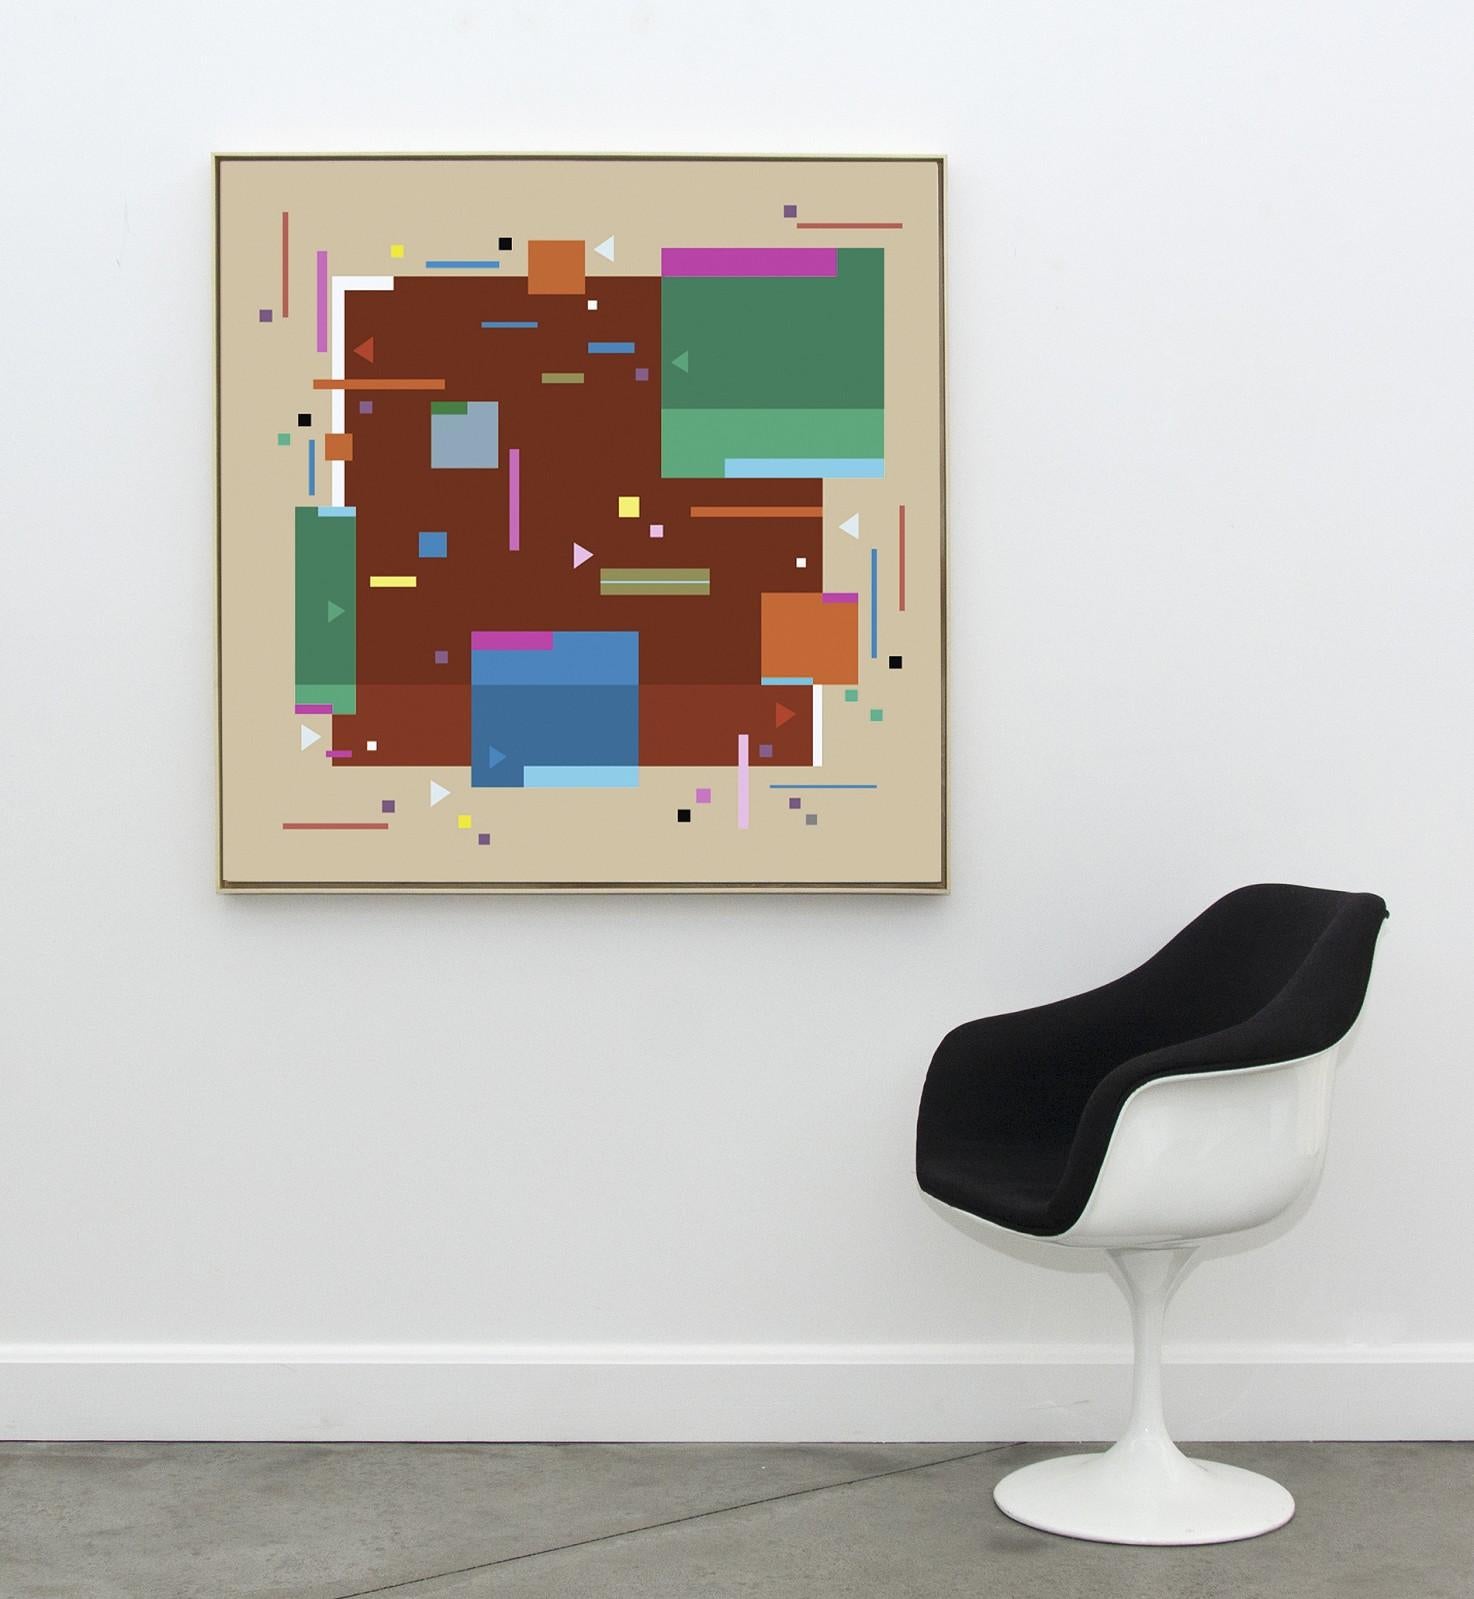 Les peintures modernes et graphiques de Kramer expriment une abstraction lyrique et géométrique par un jeu harmonique de formes syncopées de tailles et de couleurs différentes. 

Formé à l'Université de Yale (MFA), à l'Institut de design de